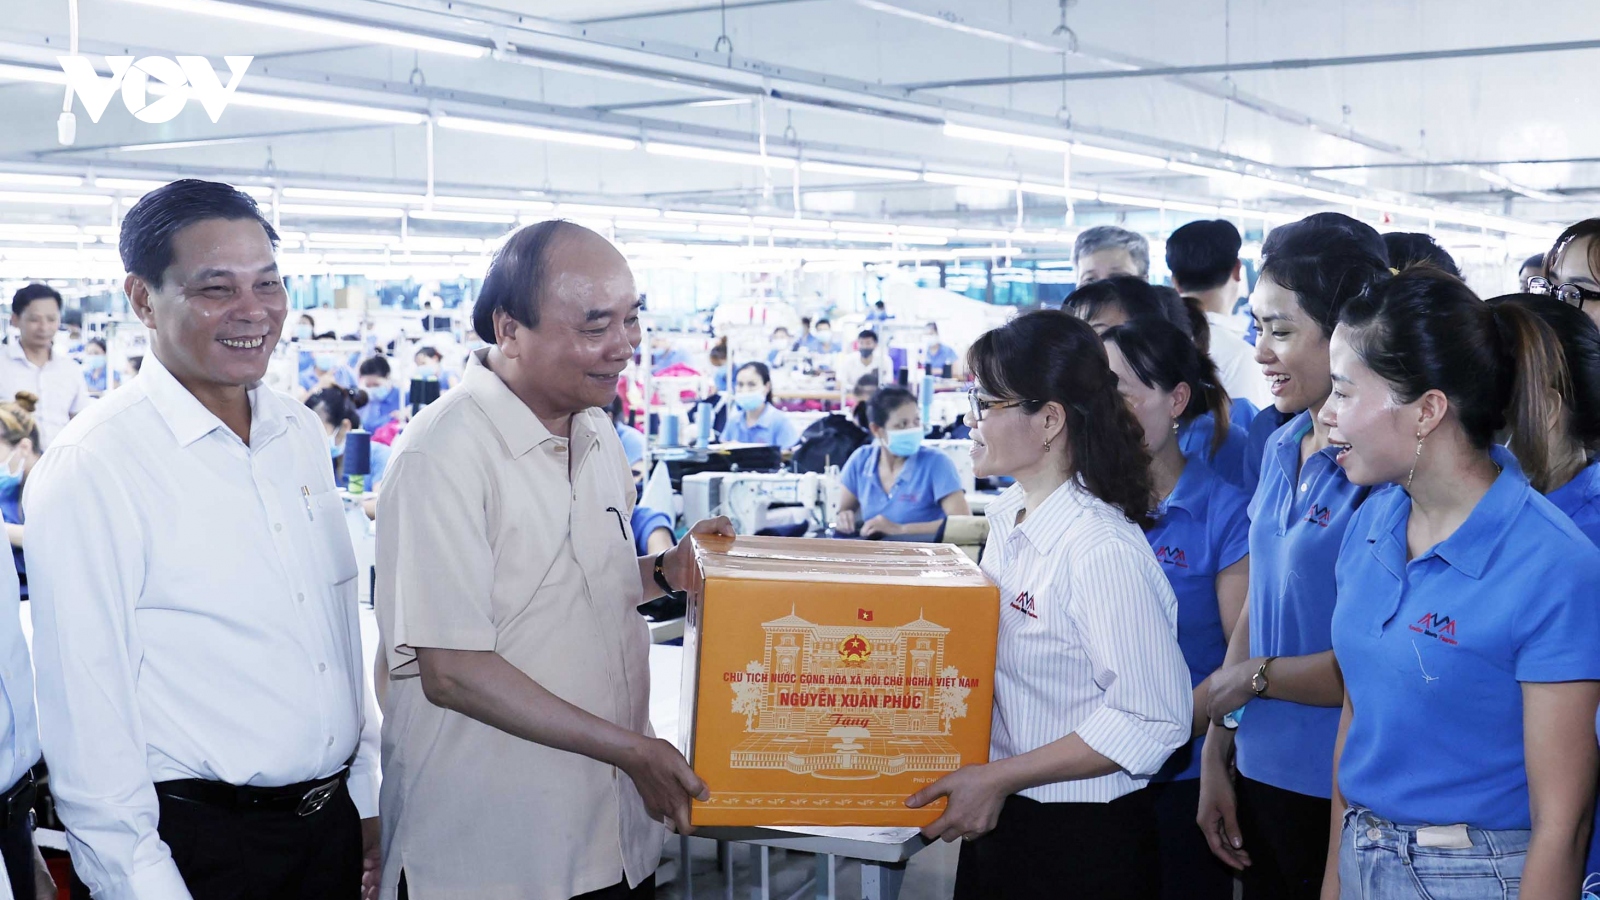 Chủ tịch nước thăm mô hình dệt may sản xuất kinh doanh hiệu quả tại Hải Phòng